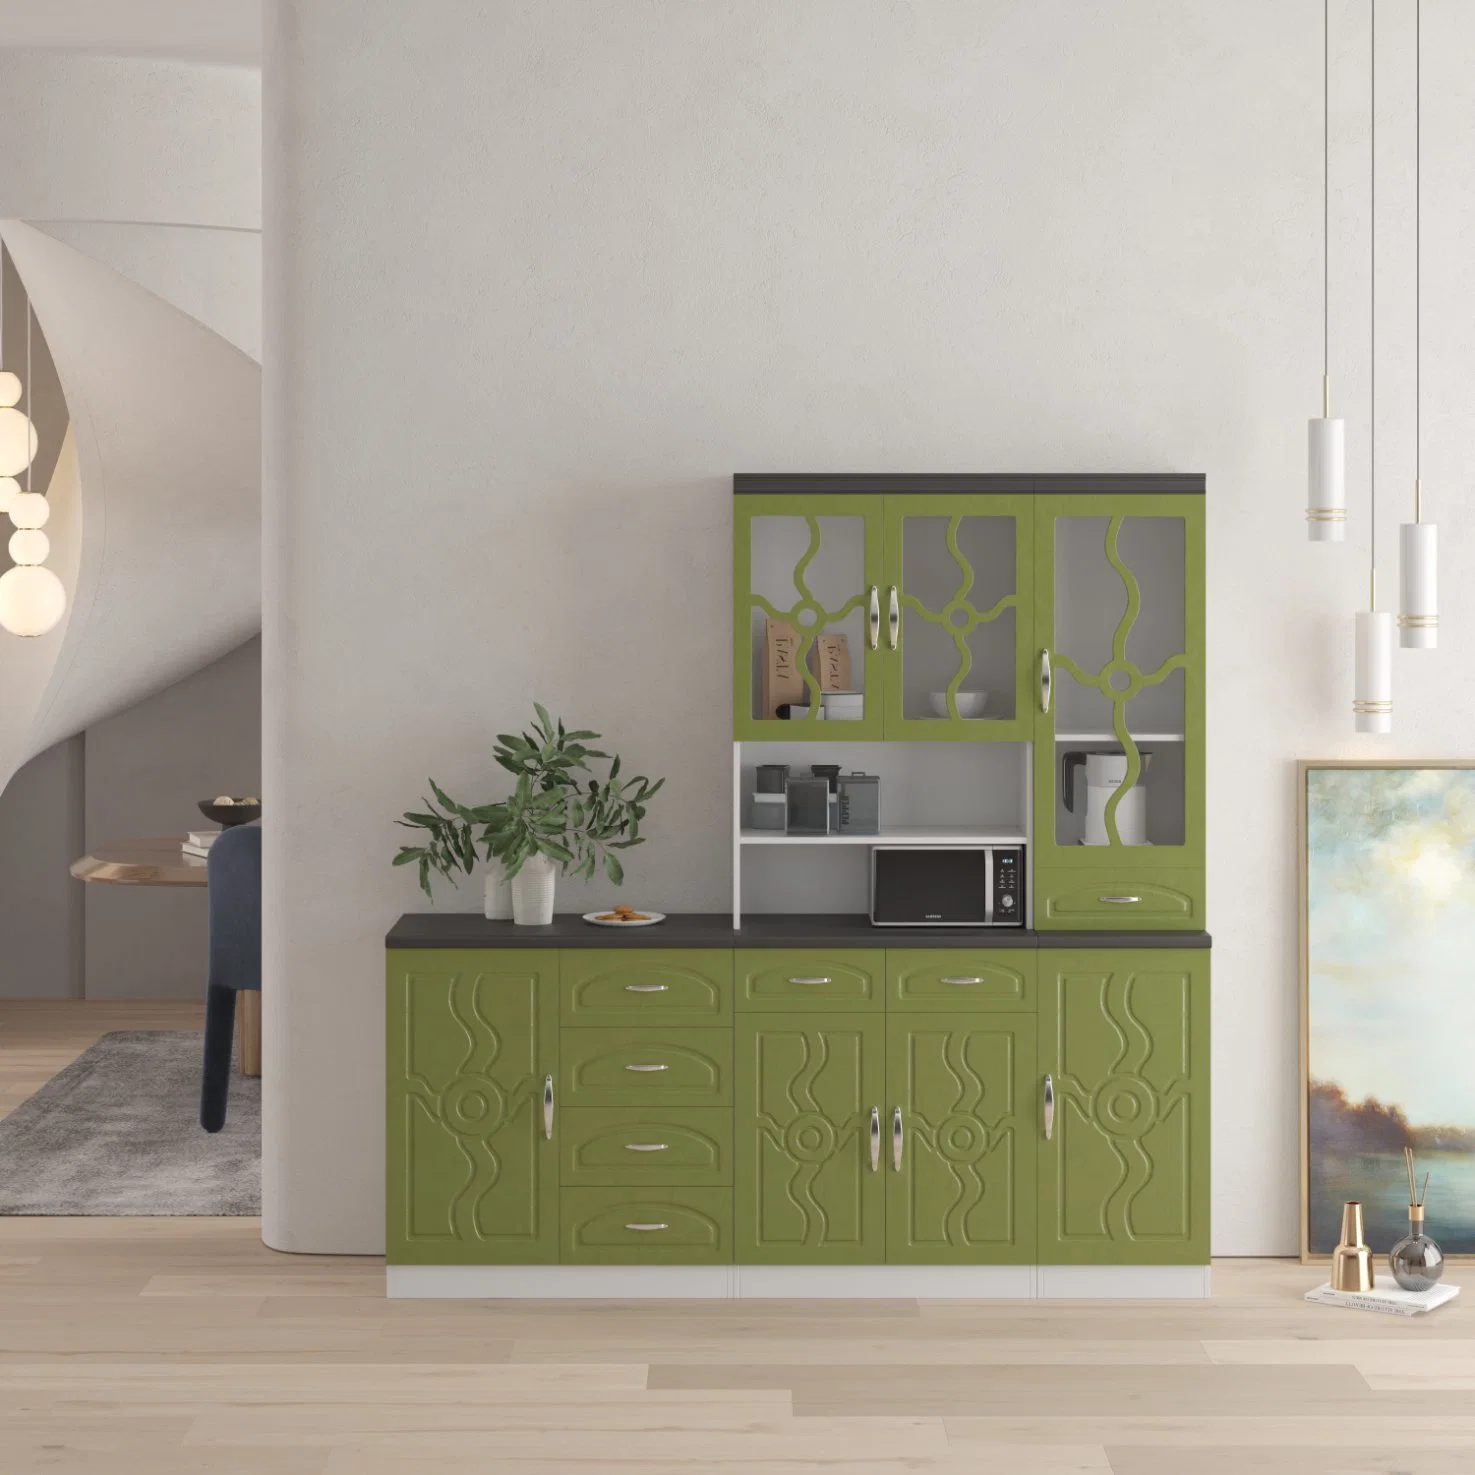 Precio al por mayor Verde estilo lineal Gabinetes de Cocina con cajón de almacenamiento MDF Living Room Furniture Display Cabinet Wall Kitchen Cabinet Foshan